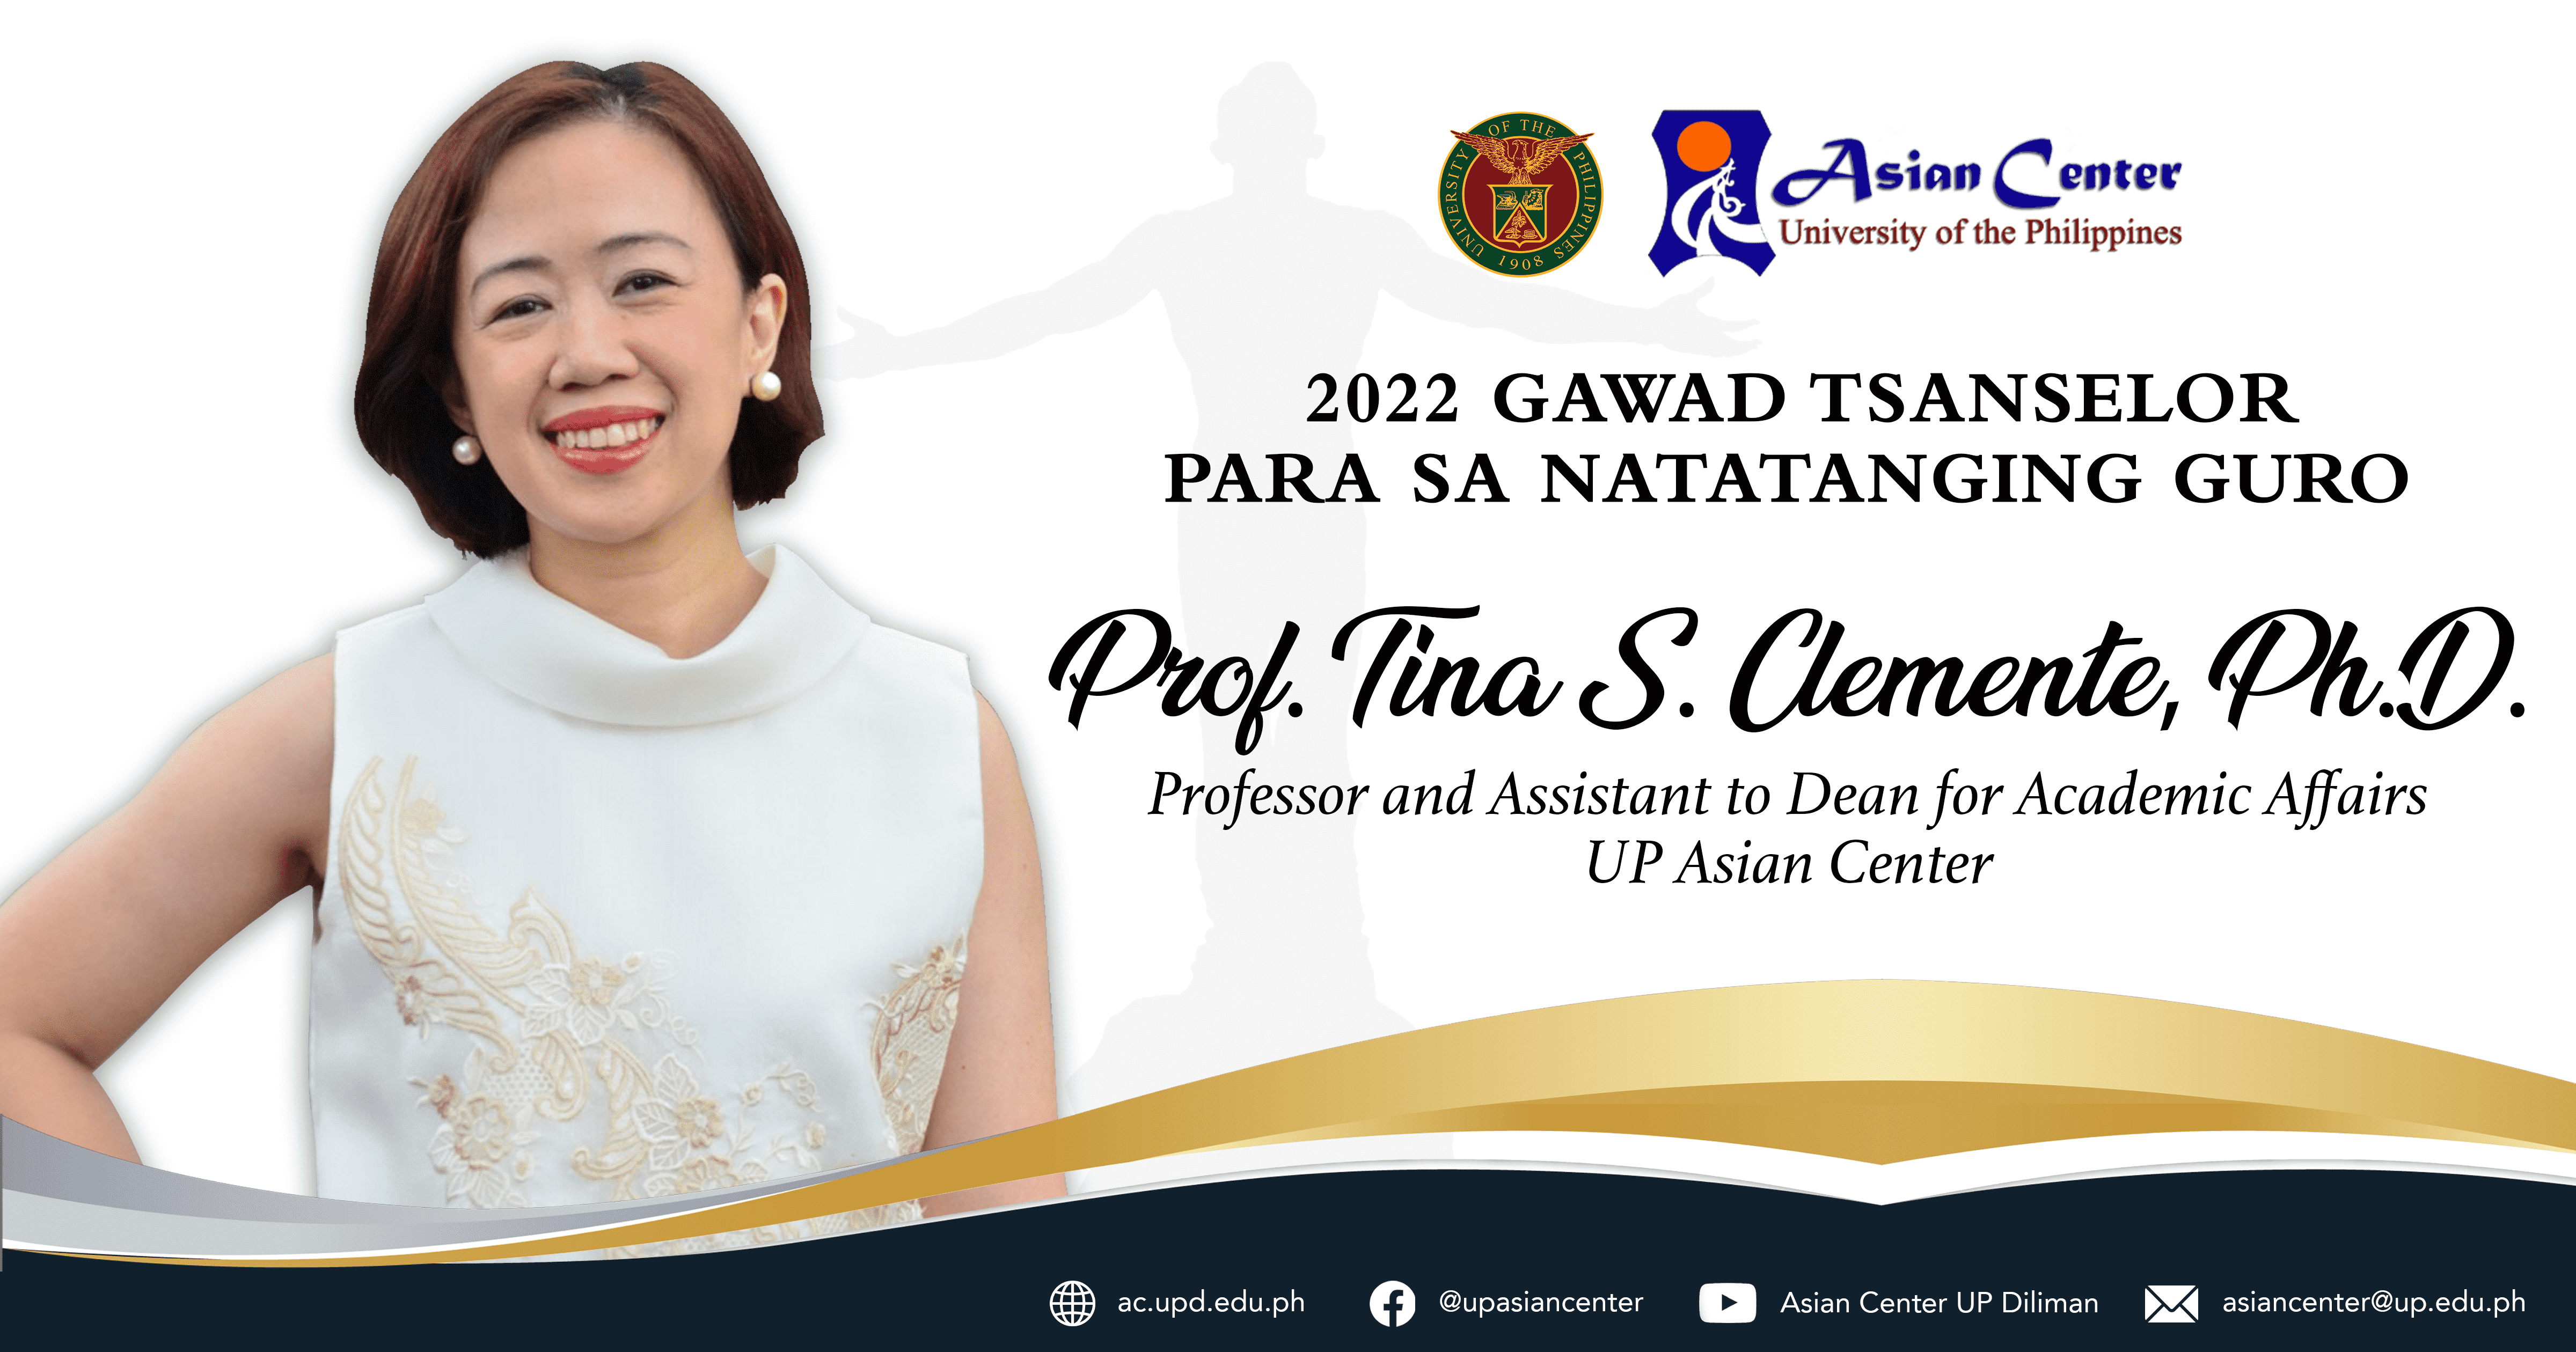 UP Asian Center Professor Tina Clemente awarded the 2022 Gawad Tsanselor sa Natatanging Guro